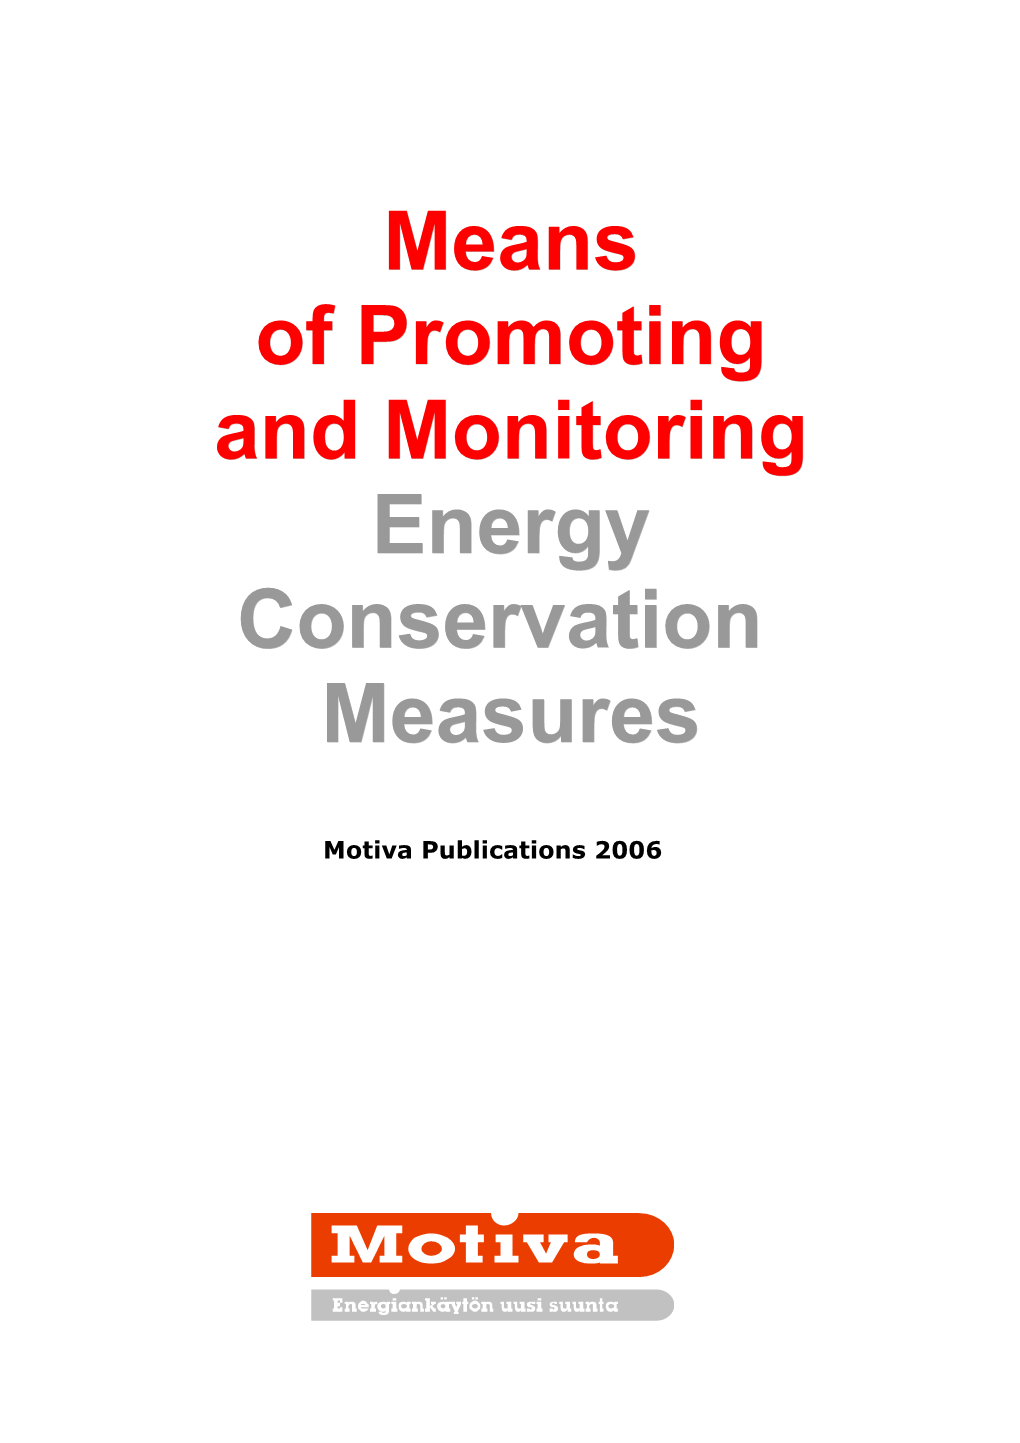 Motiva Publications 2006